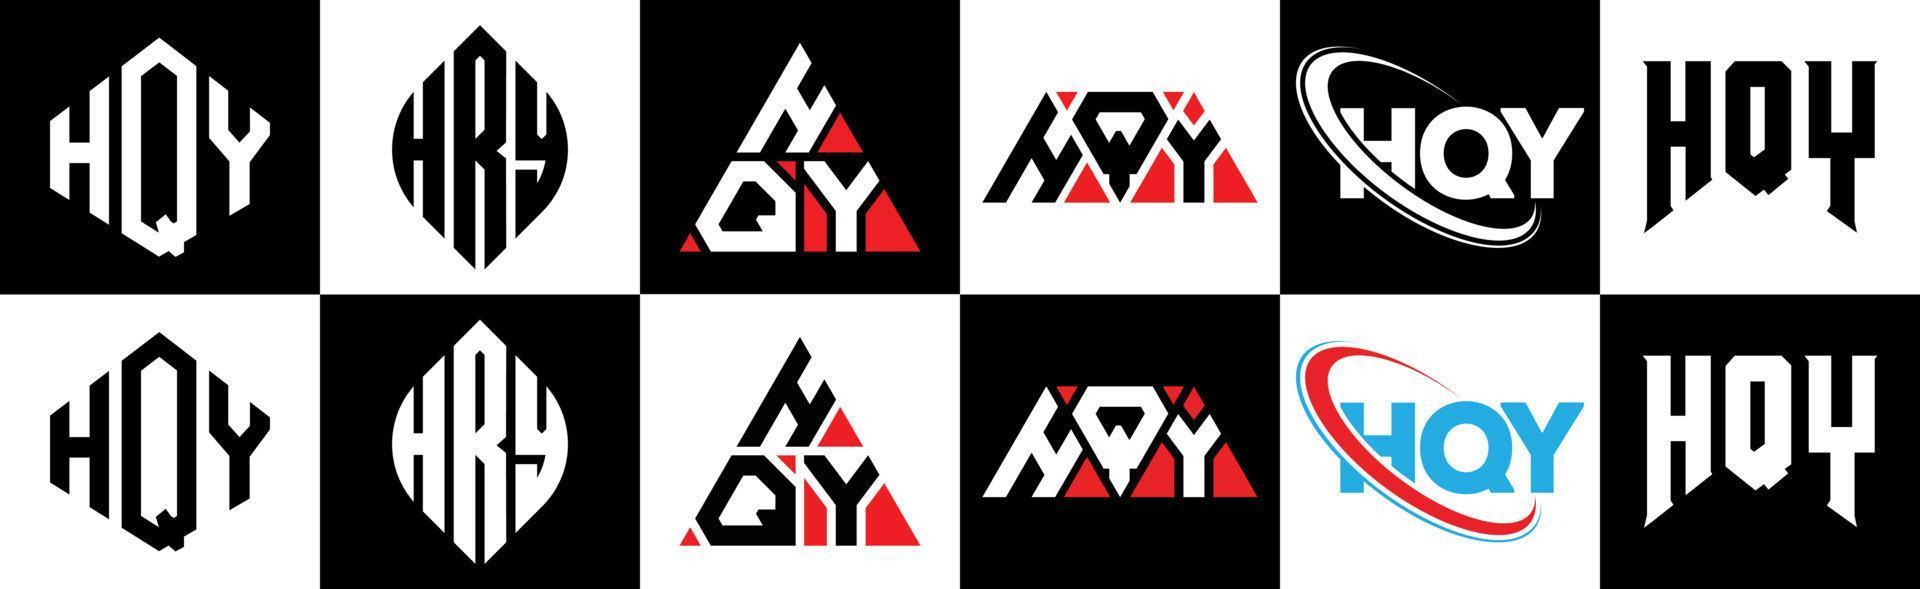 hqy lettera logo design nel sei stile. hqy poligono, cerchio, triangolo, esagono, piatto e semplice stile con nero e bianca colore variazione lettera logo impostato nel uno tavola da disegno. hqy minimalista e classico logo vettore